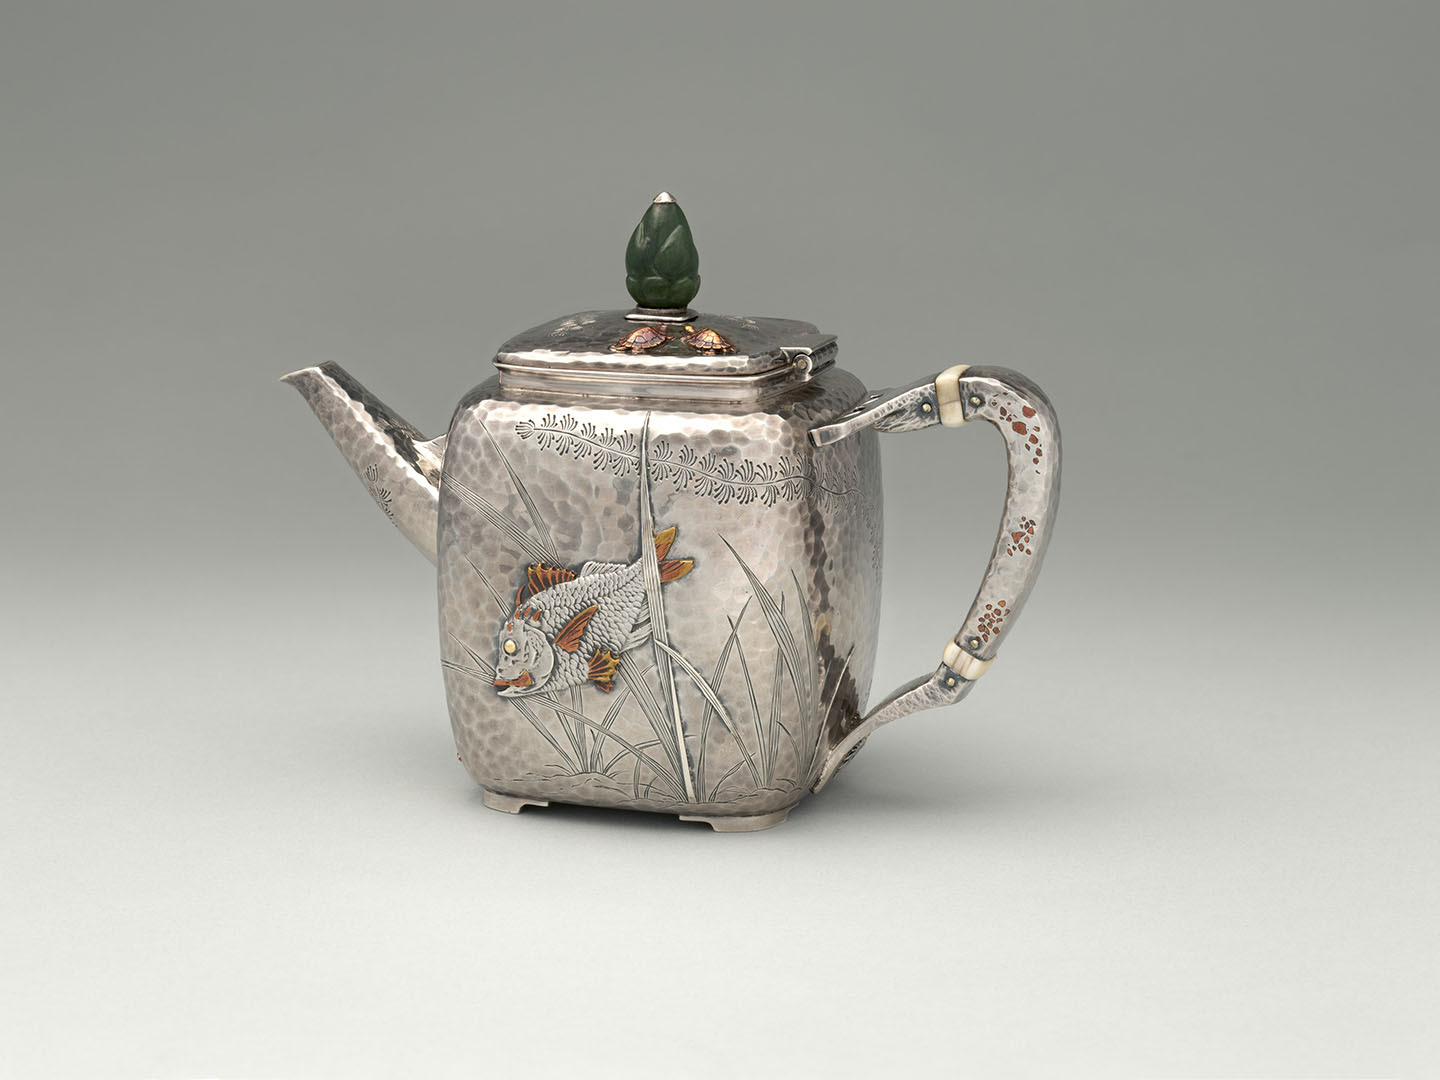 Ấm trà Mỹ quốc, hãng Tiffany & Co., khoảng năm 1880. Bạc, đồng, ngà voi, và ngọc; kích thước: 5 1/2 inch. Bảo tàng nghệ thuật Metropolitan, thành phố New York. (Ảnh: Tư liệu công cộng)